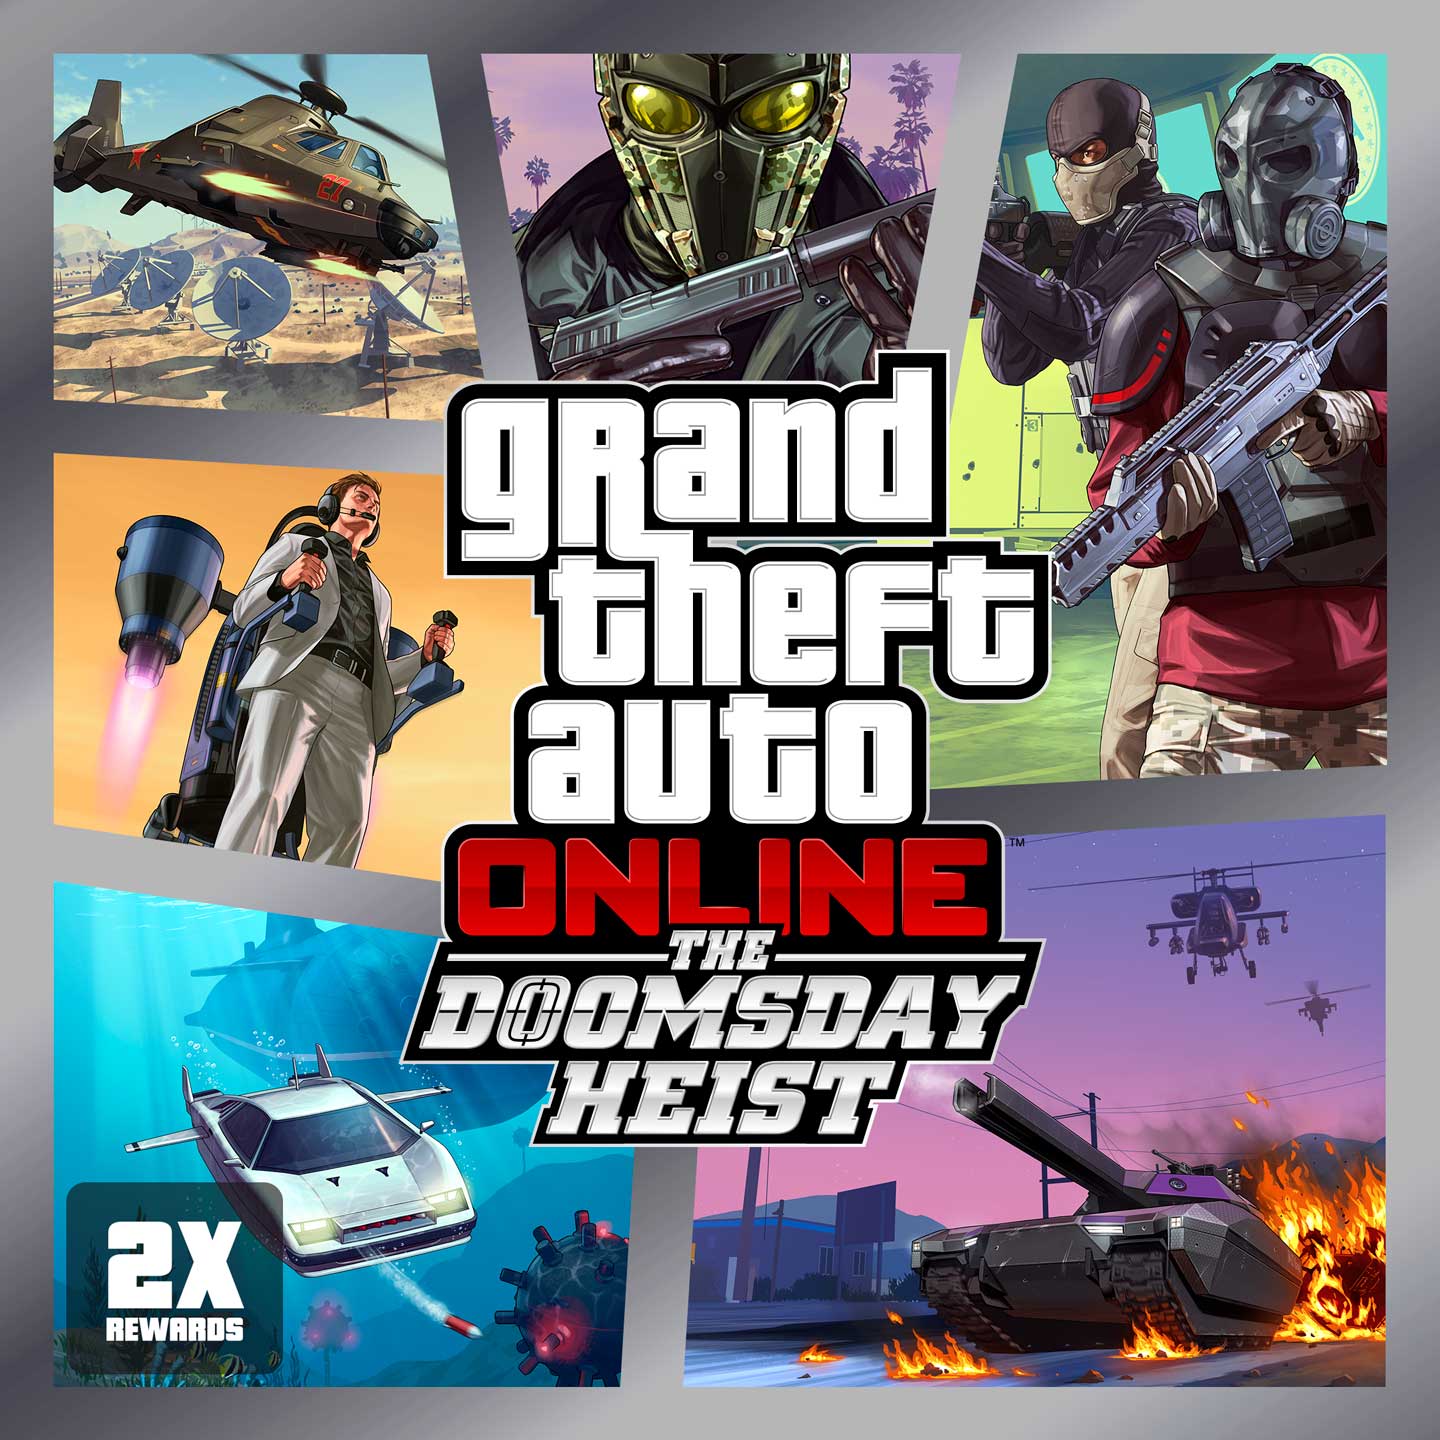 Grand Theft Auto V (GTA V) (Chaves de jogos) for free!